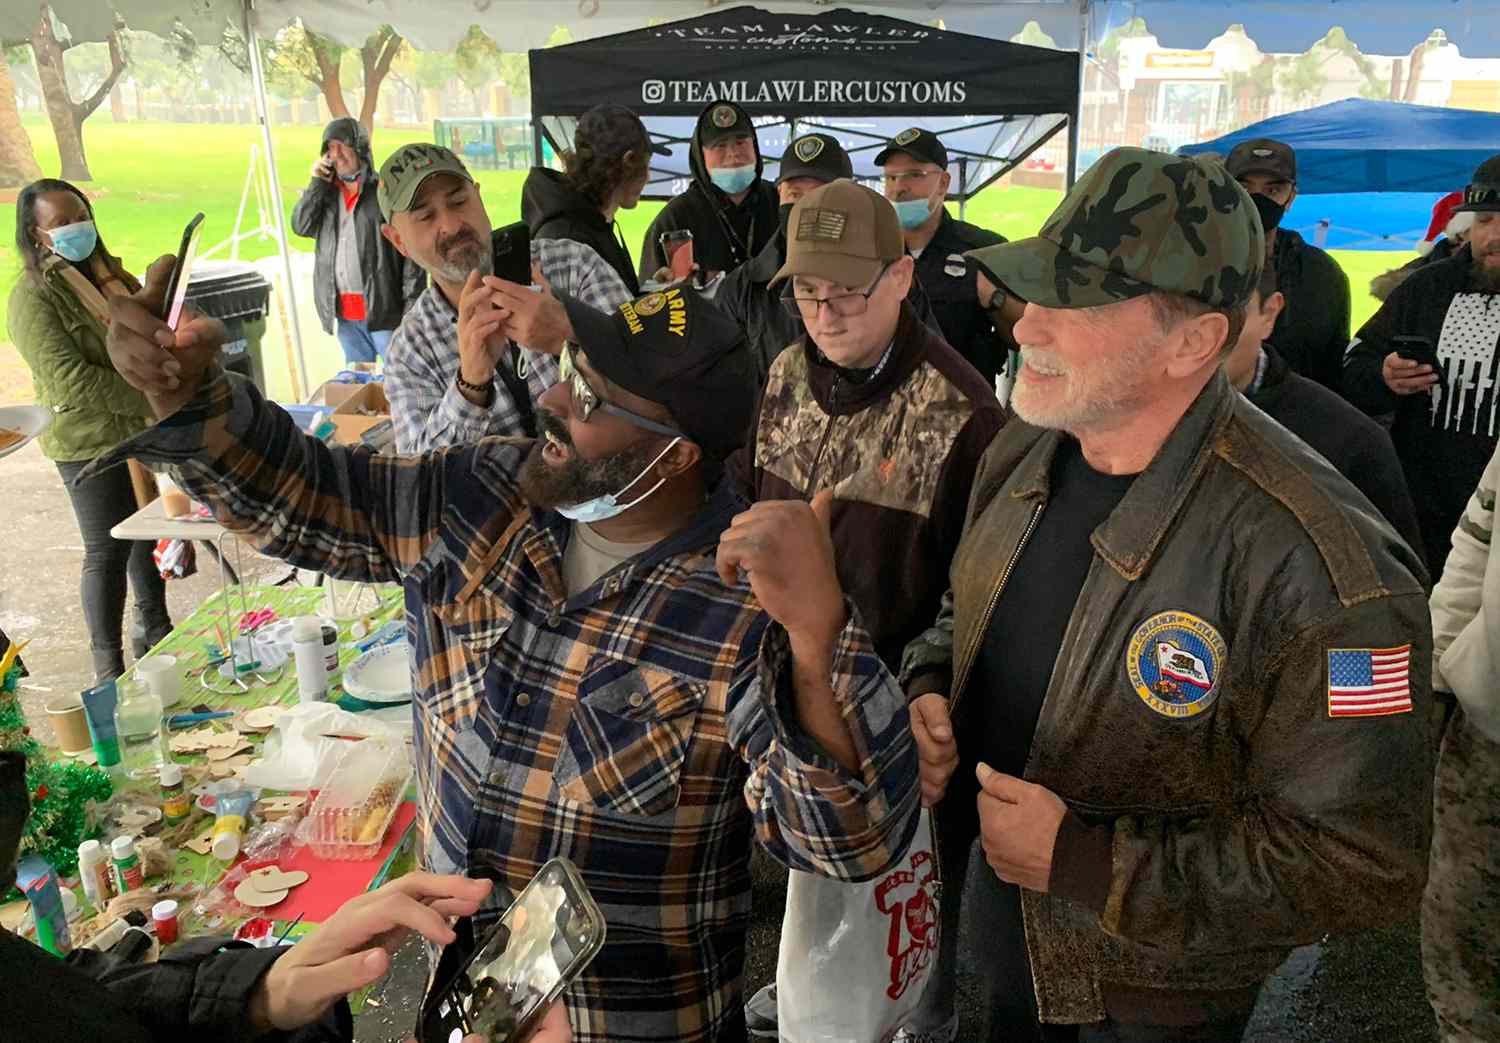 Arnold Schwarzenegger Donates 25 Tiny Homes to Homeless Veterans: 'Greatest Christmas Gift'